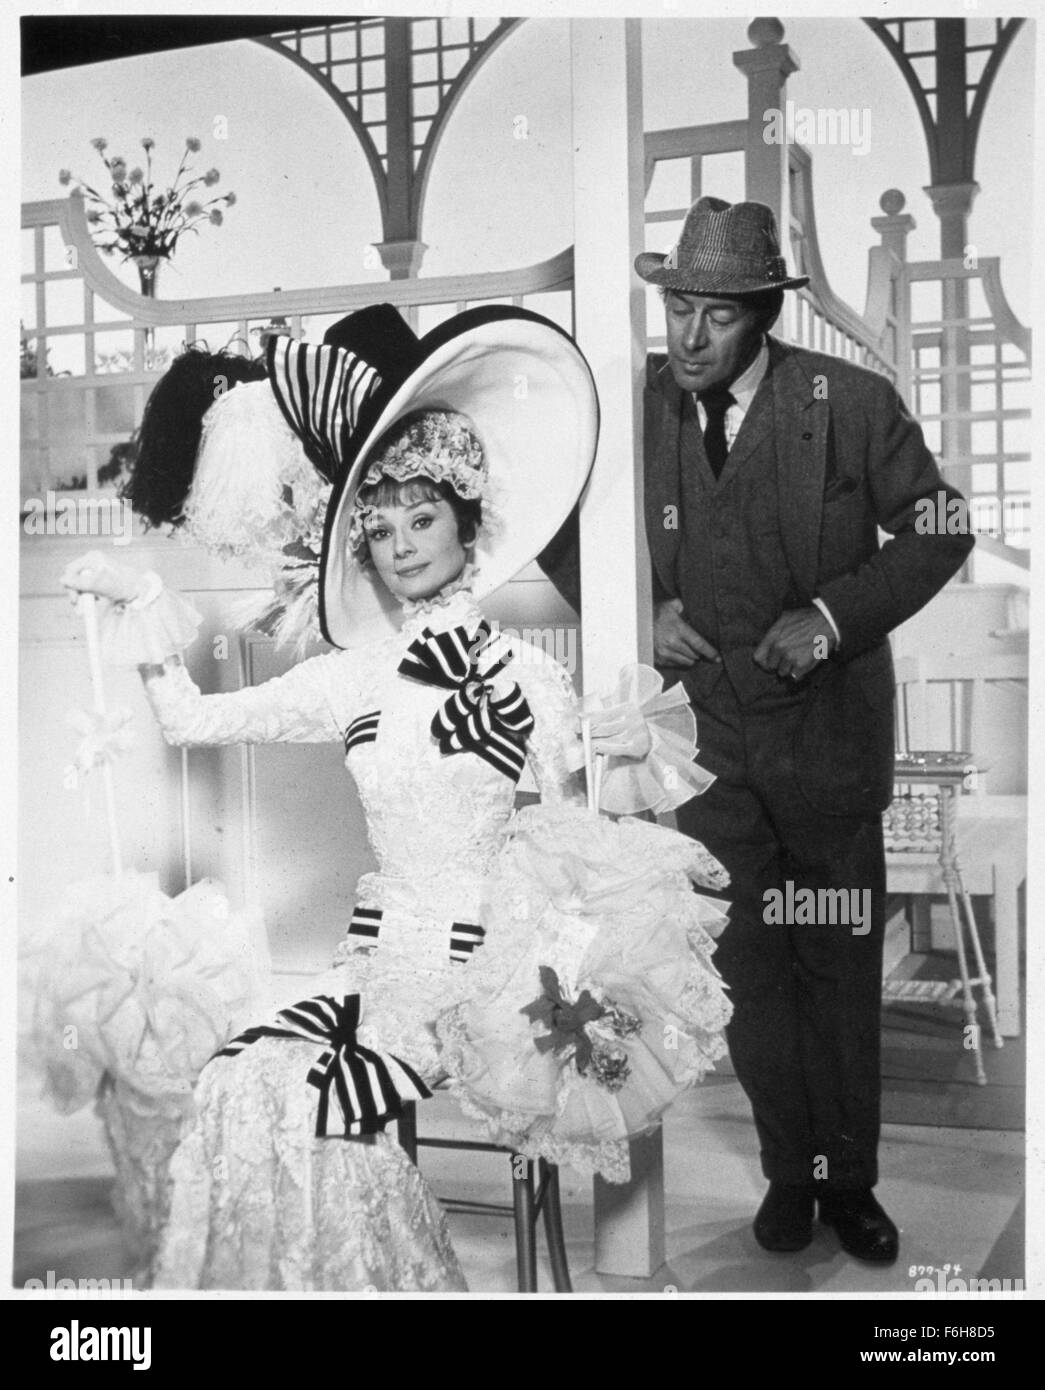 1964, il titolo del film: My Fair Lady, Direttore: George Cukor, Studio: WARNER, nella foto: corteggiatore, REX HARRISON, Audrey Hepburn, vestito - B&W, fronzoli, cappello, signora. (Credito Immagine: SNAP) Foto Stock